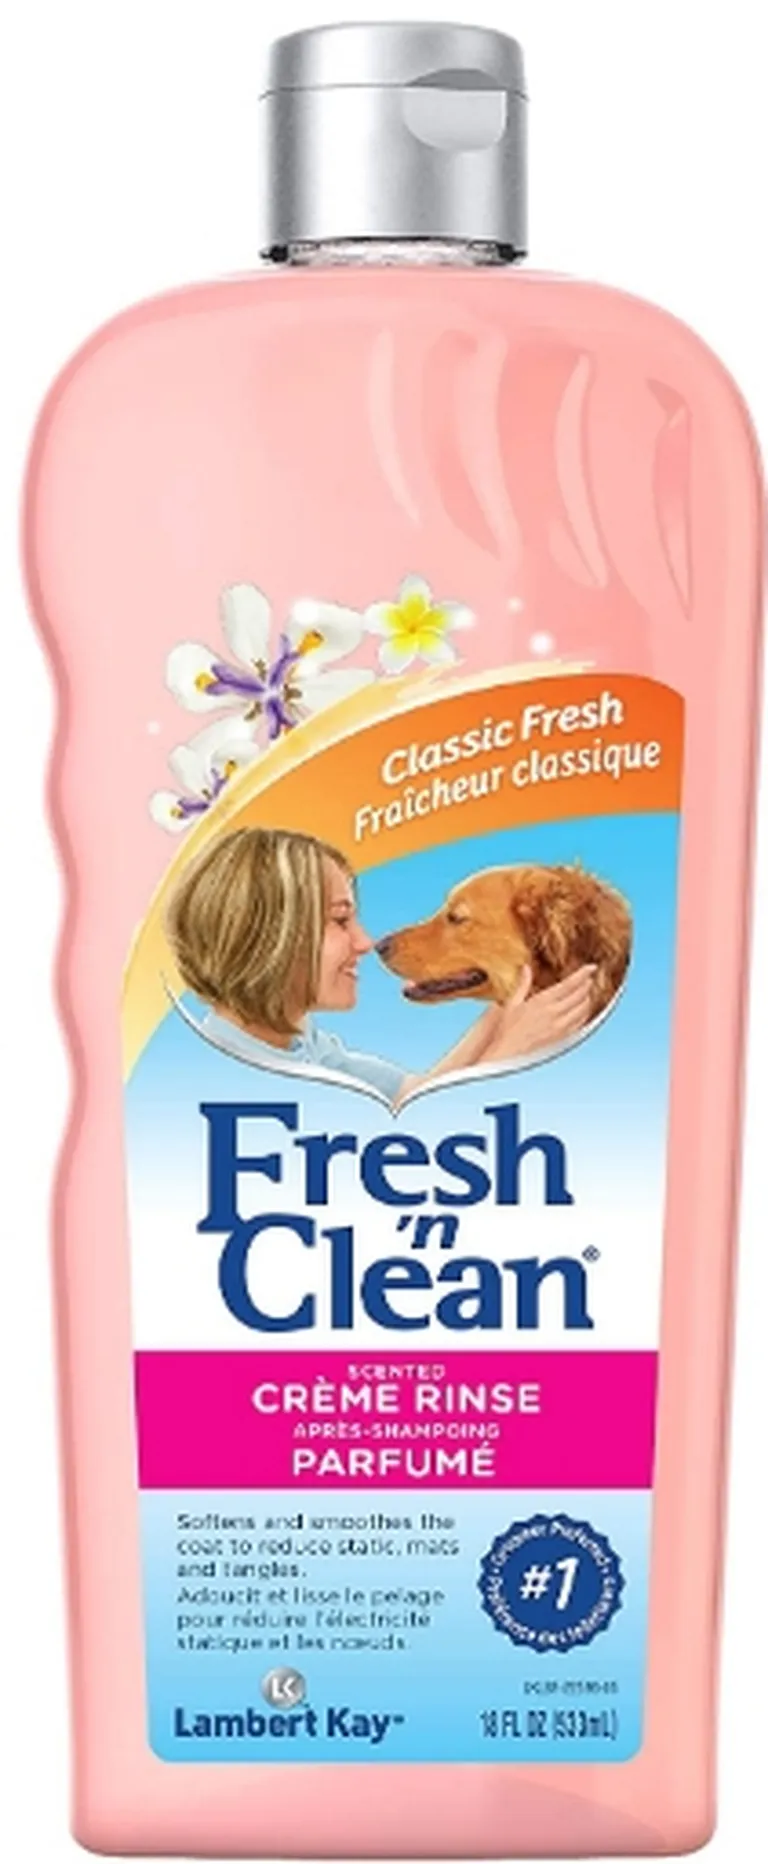 Fresh n Clean Creme Rinse Fresh Clean Scent Photo 1